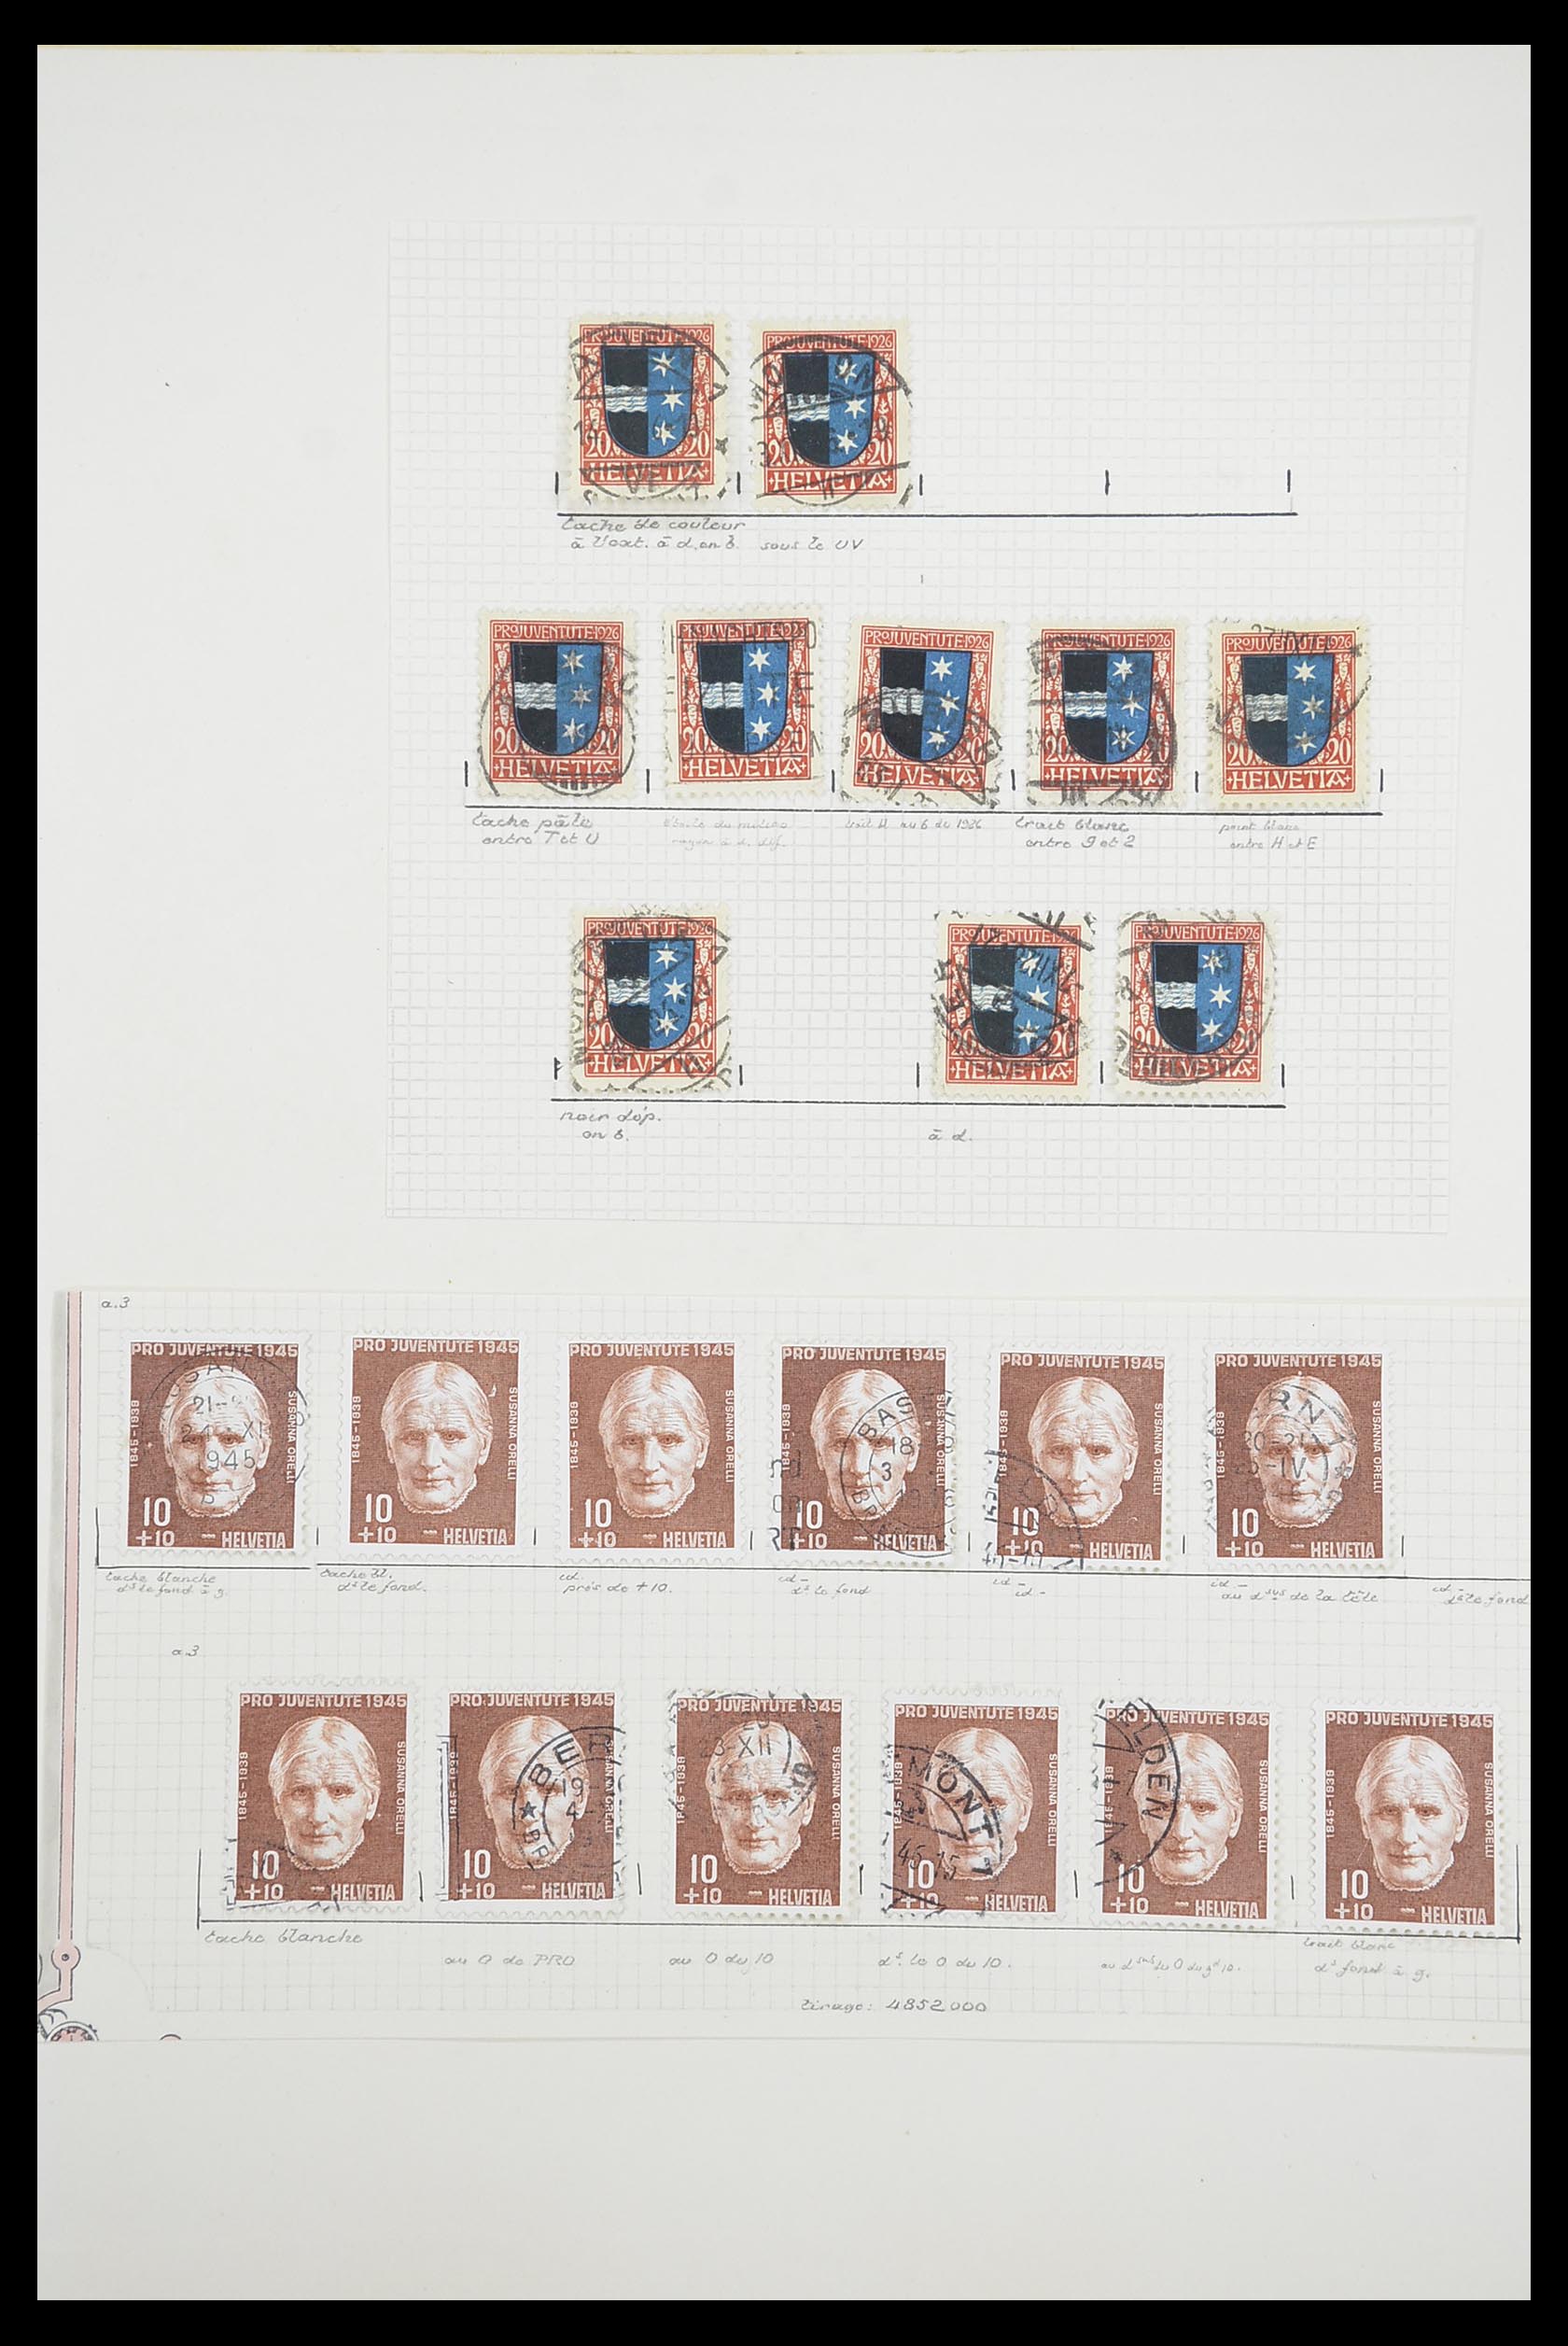 33926 059 - Postzegelverzameling 33926 Zwitserland uitzoekpartij 1850-1997.